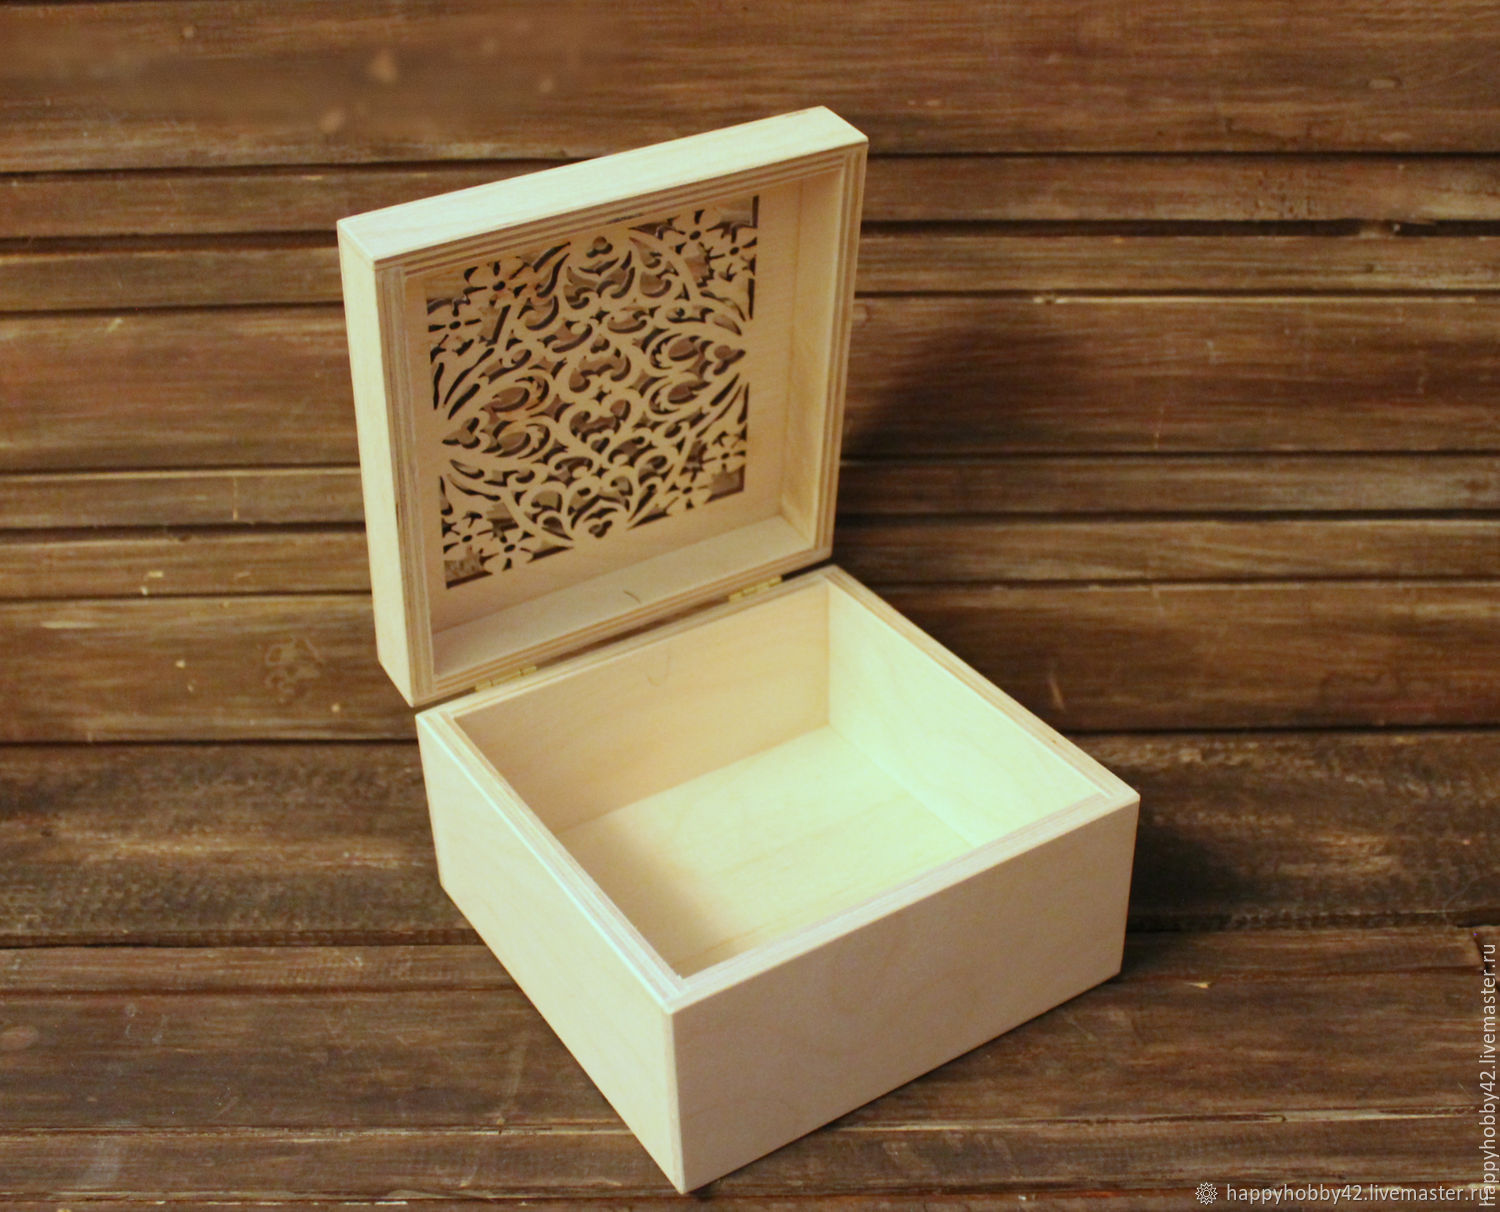 Деревянная коробка с крышкой. Деревянная коробочка с крышкой. Подарочная деревянная коробка. Шкатулка деревянная. Подарочная деревянная шкатулка.